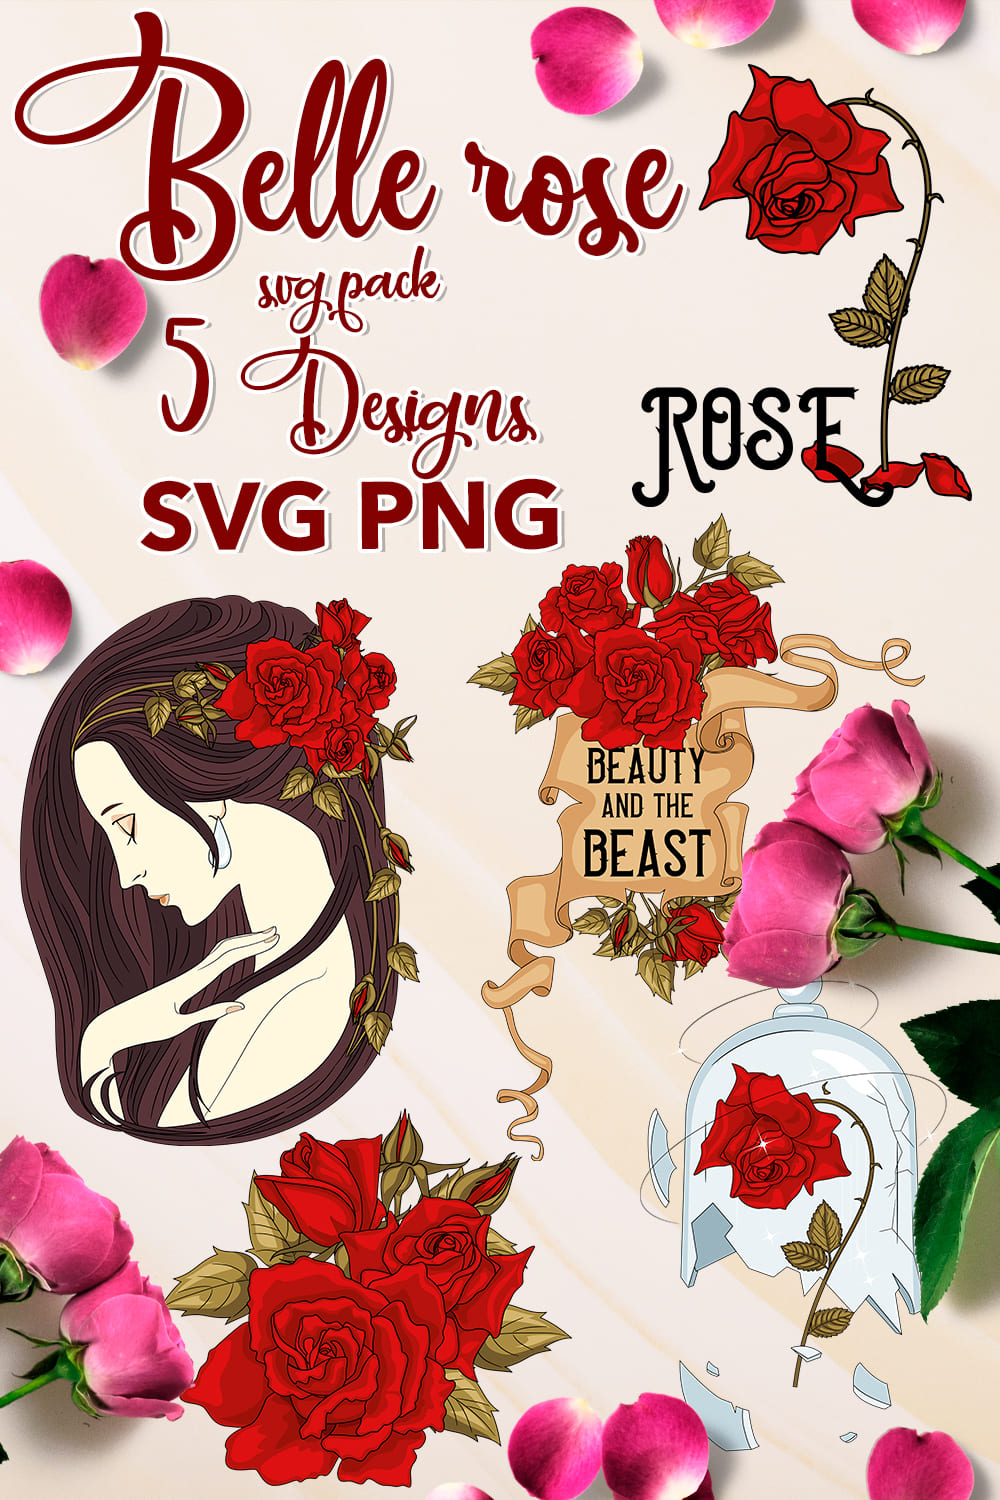 Belle Rose Svg - Pinterest.